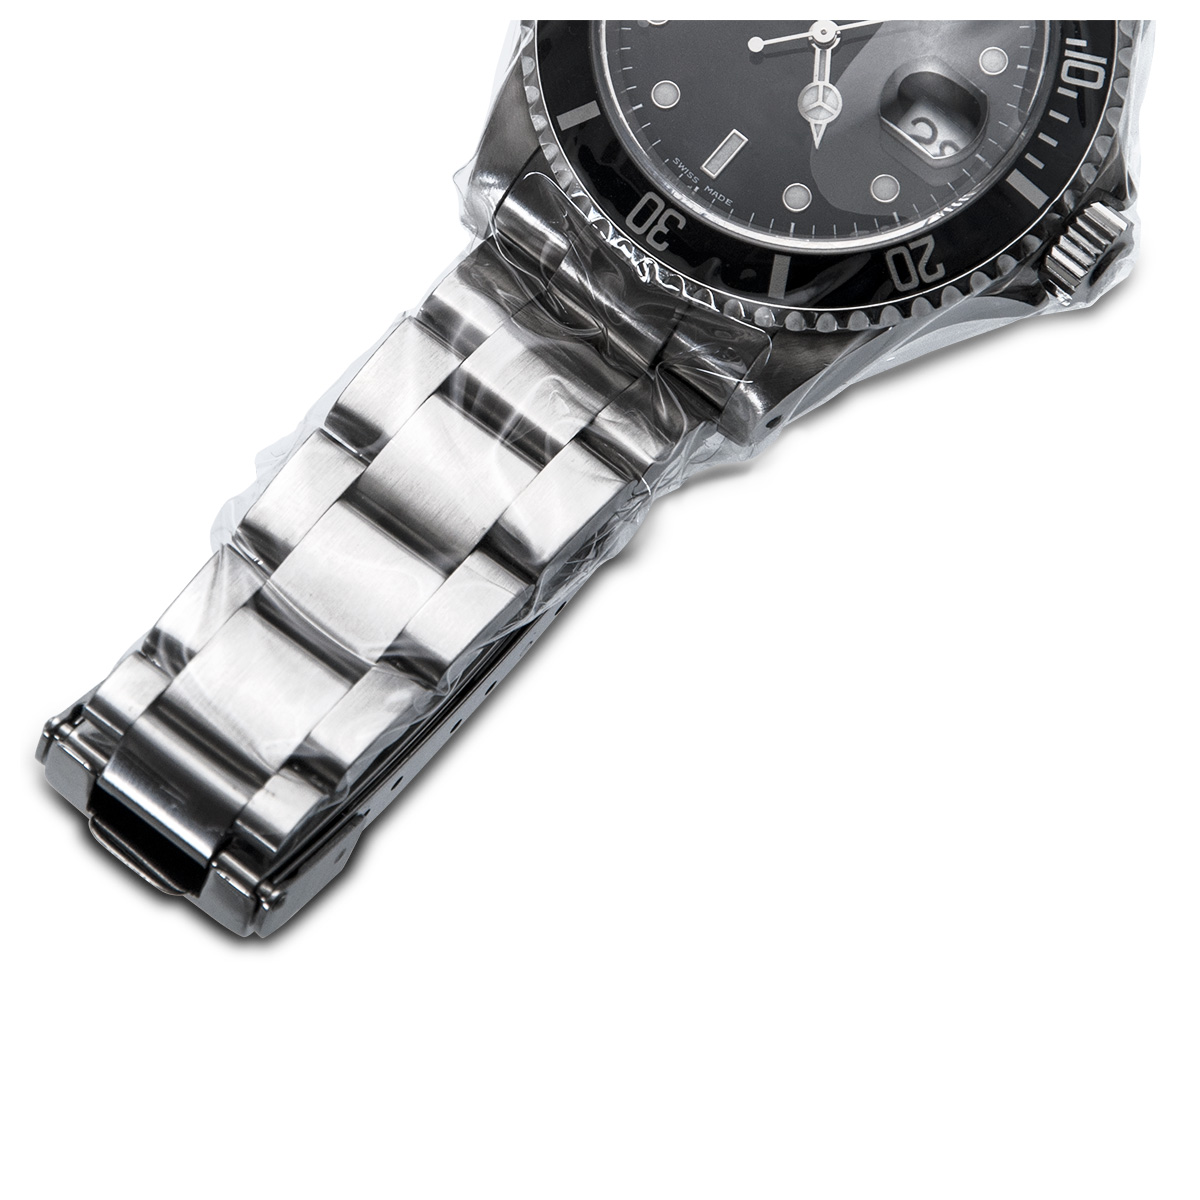 Adhäsionsfolie, Rolle, 10 cm x 100 m, extra dünn, 0,05 mm zum Schutz von Uhren, Schmuck und Luxusartikeln